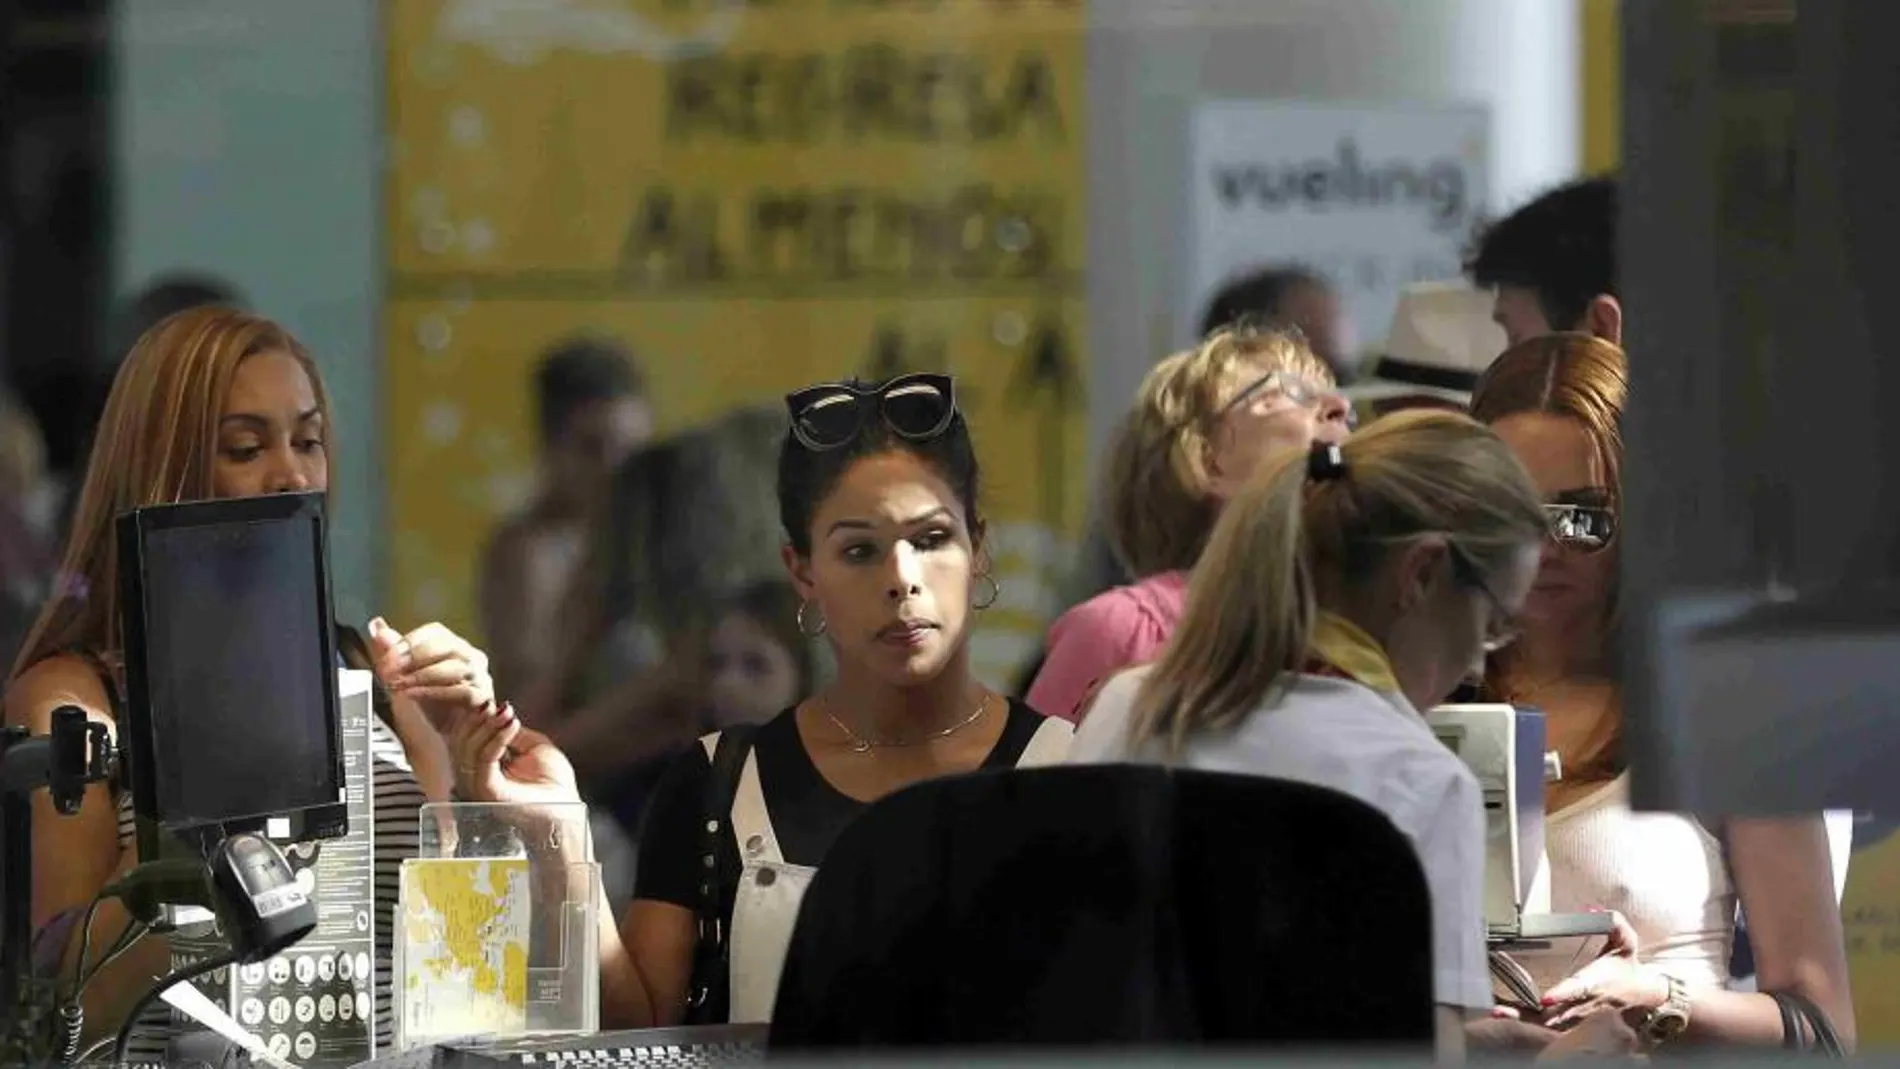 Personal de facturación de Vueling atiende a los viajeros en el Aeropuerto de El Prat.